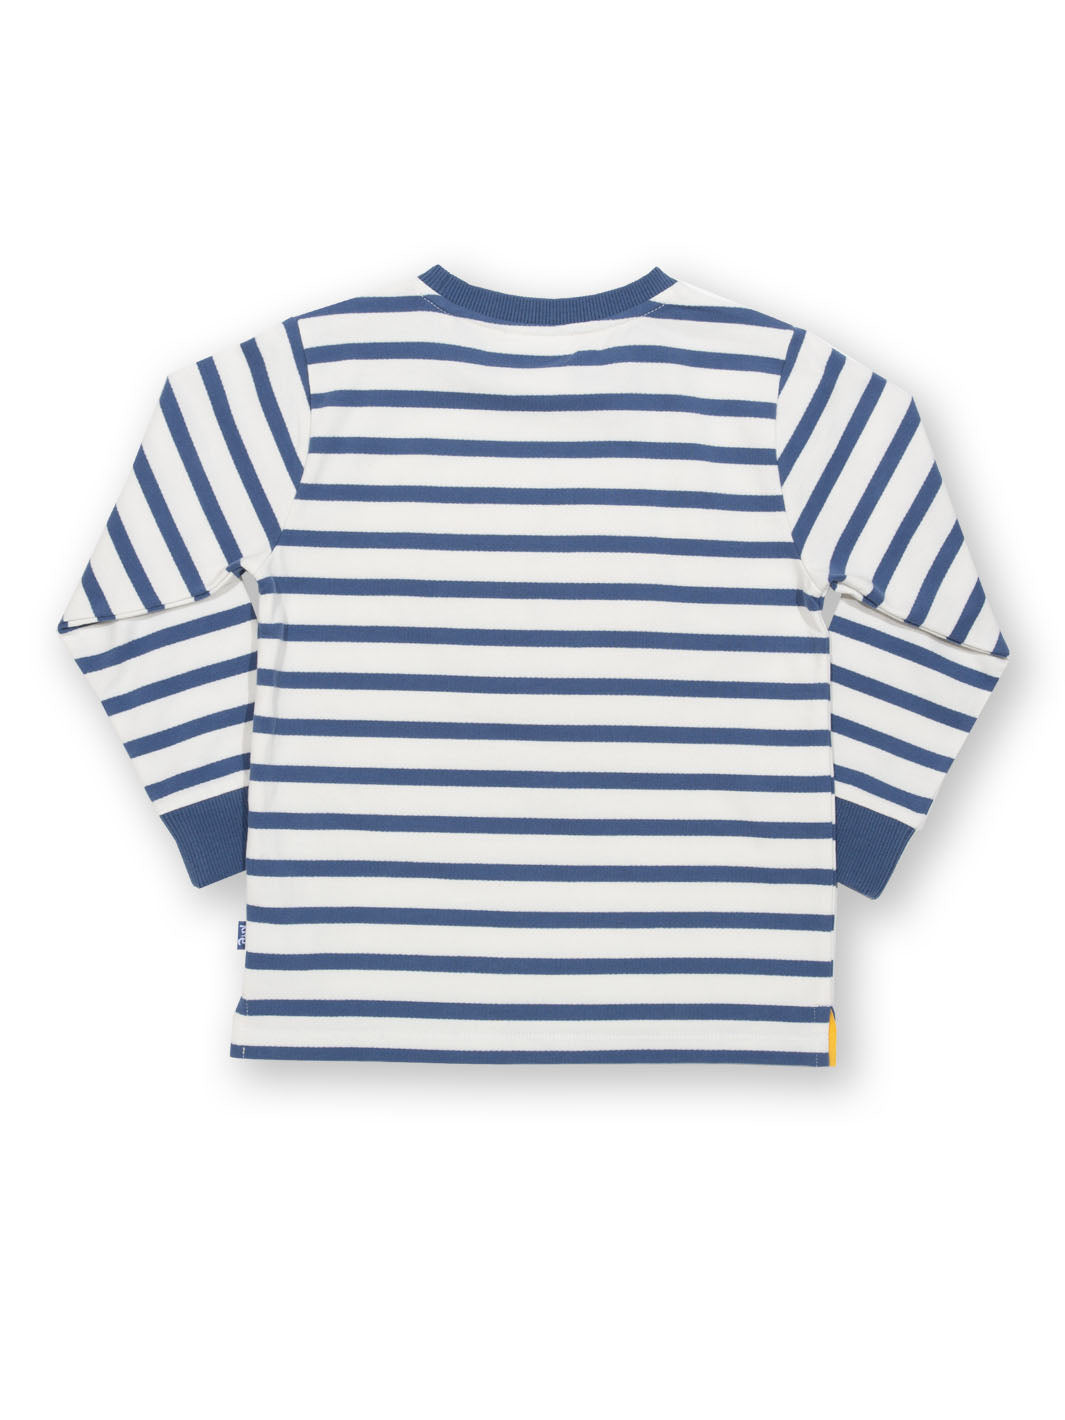 Kite Bumble Blooms Sweatshirt - Navy Stripe